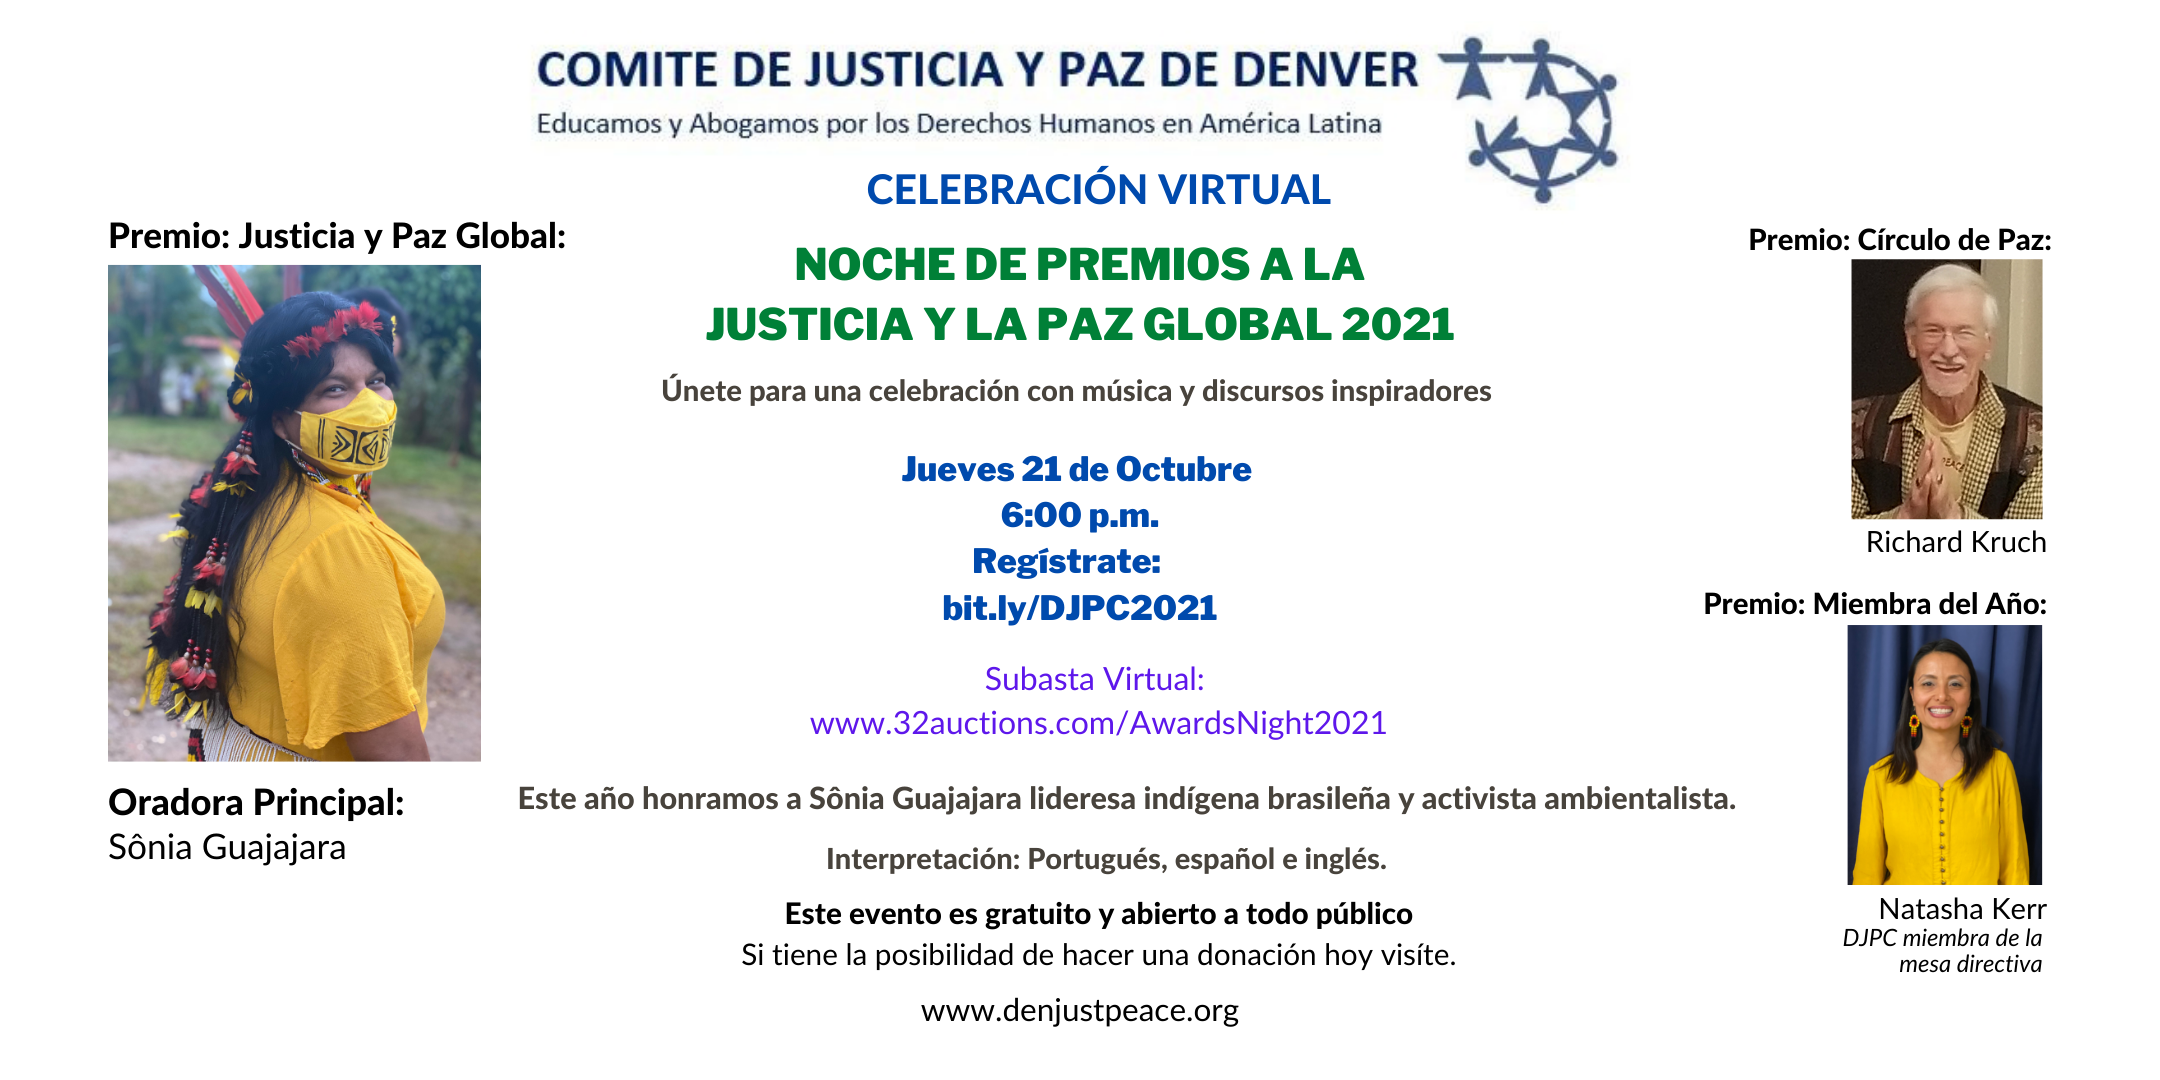 (English) Invitación: Noche de Premios a la Justicia y la Paz Global 2021: Jueves 21 de Octubre a las 18:00 horas.